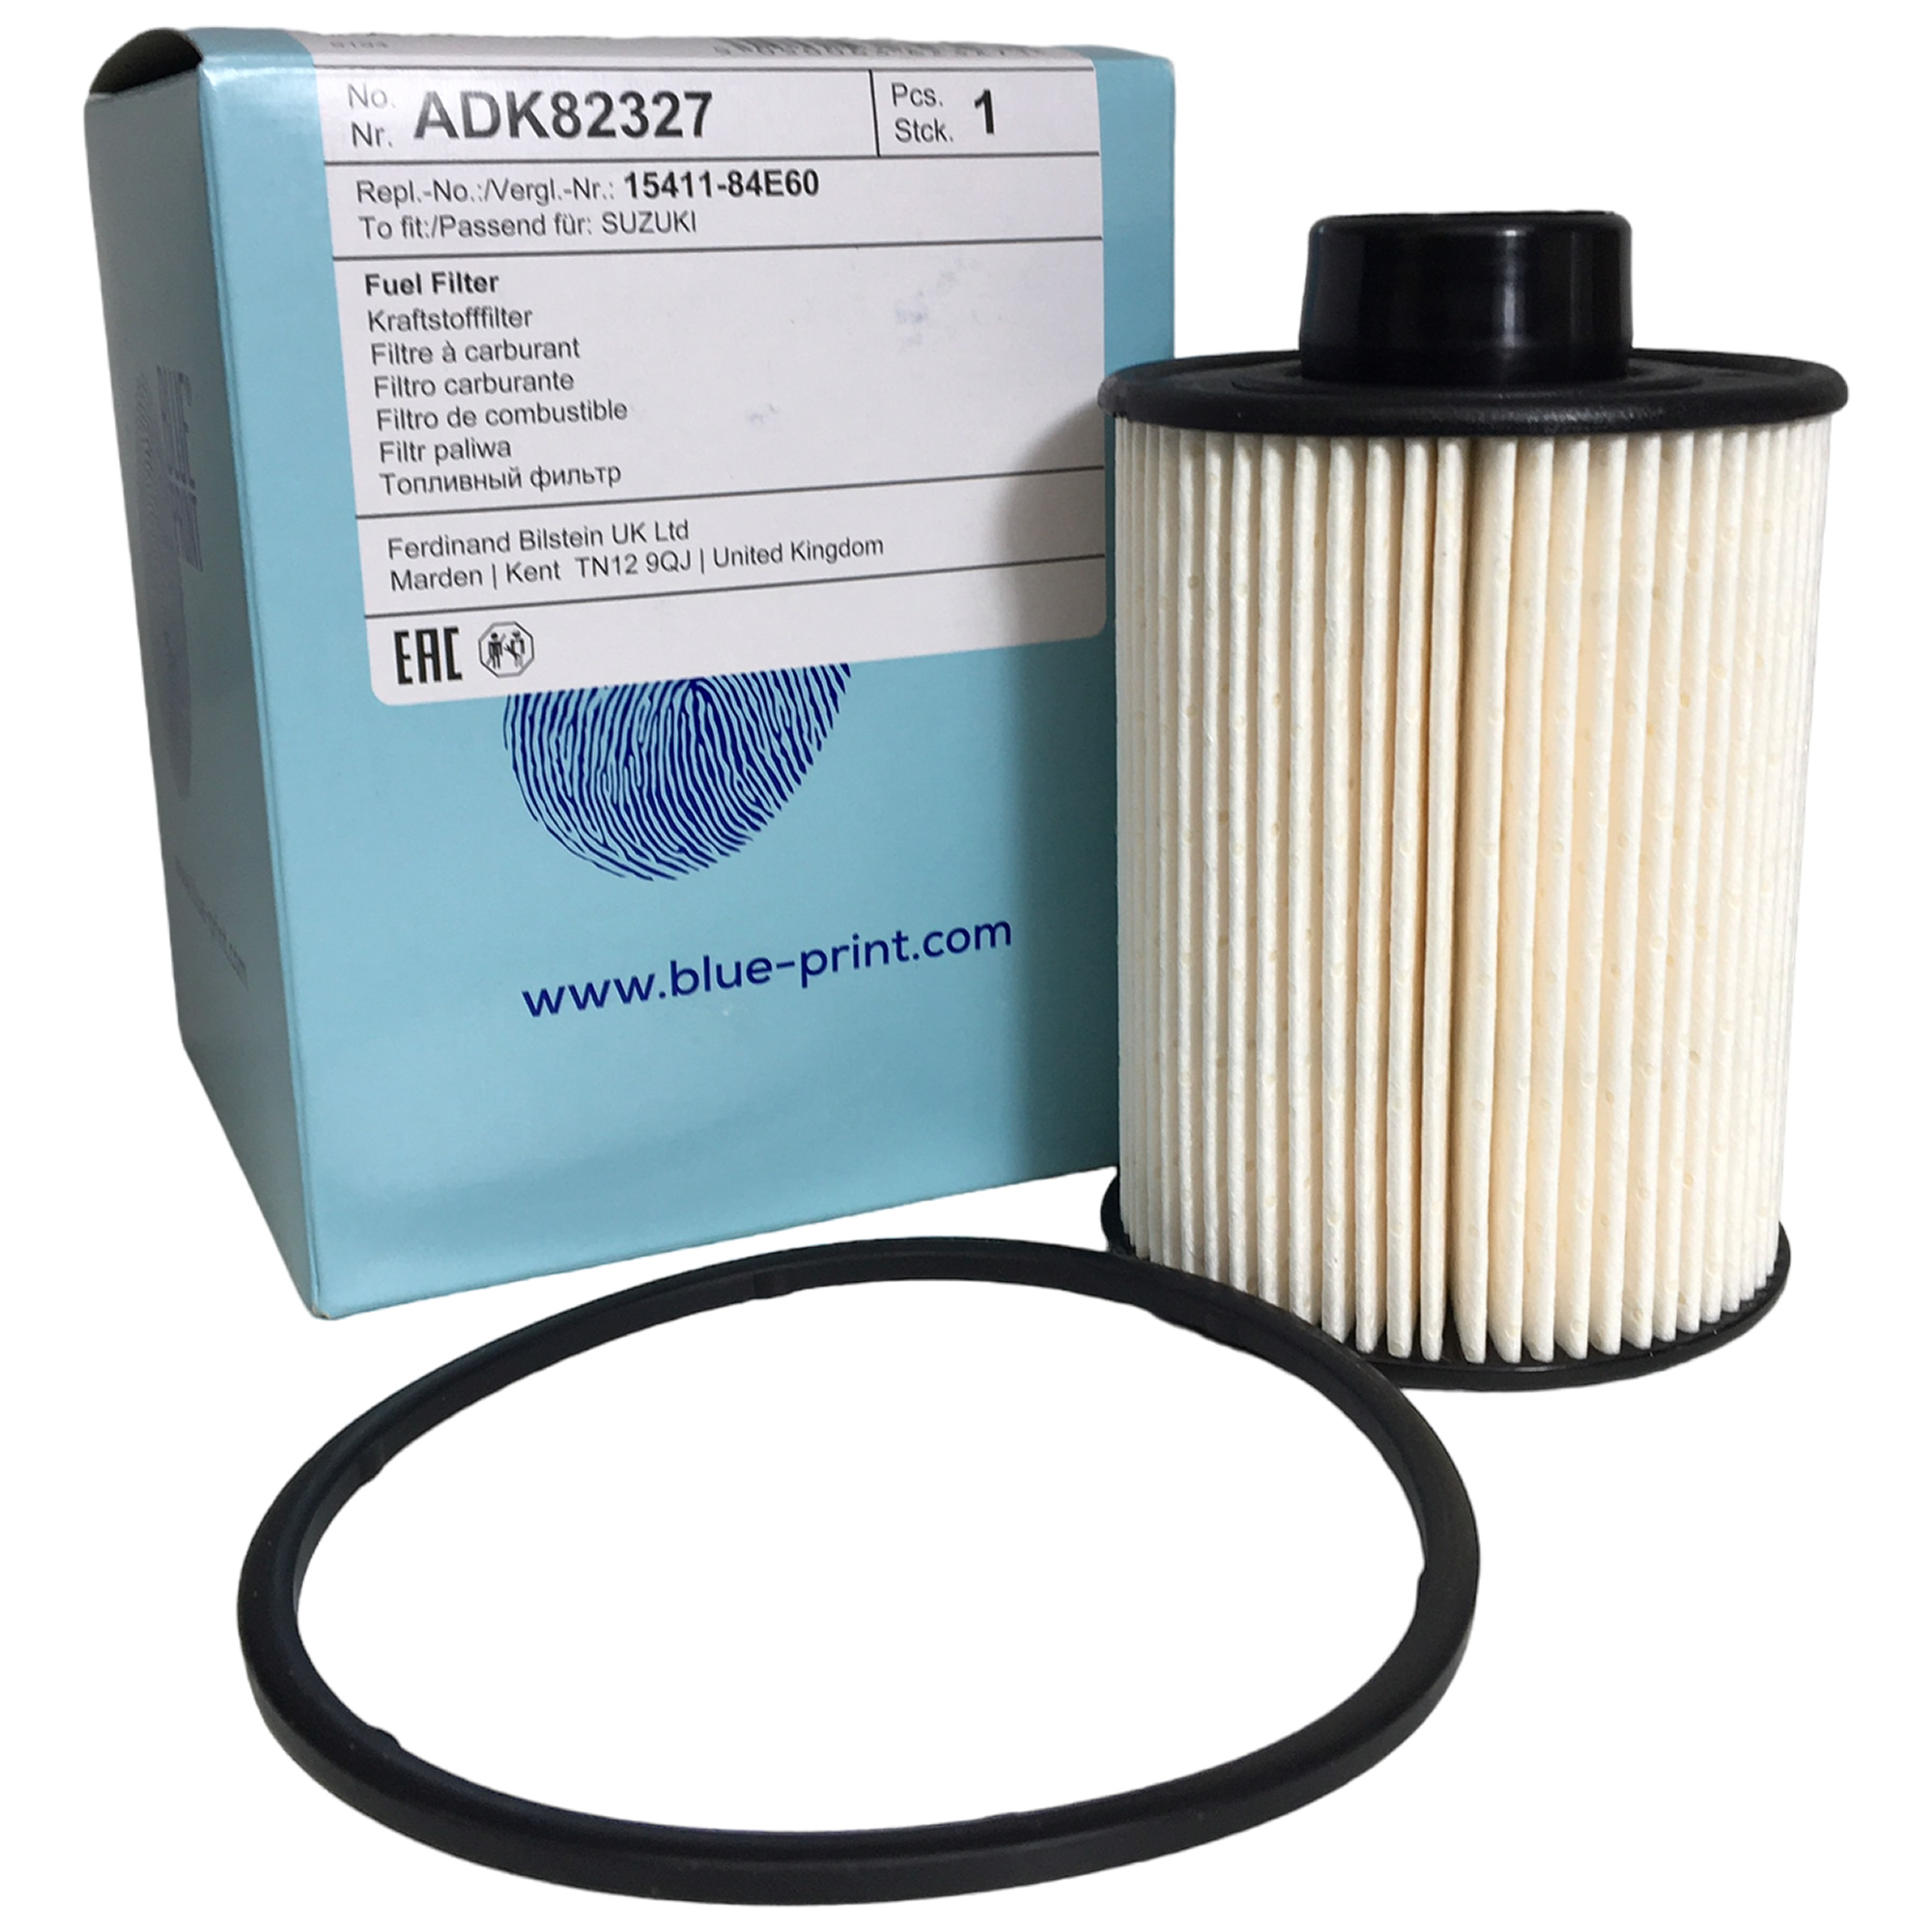 Blue Print Fuel Filter ADK82327 - Fiat / Peugeot / Citroen Motorhomes and Vans